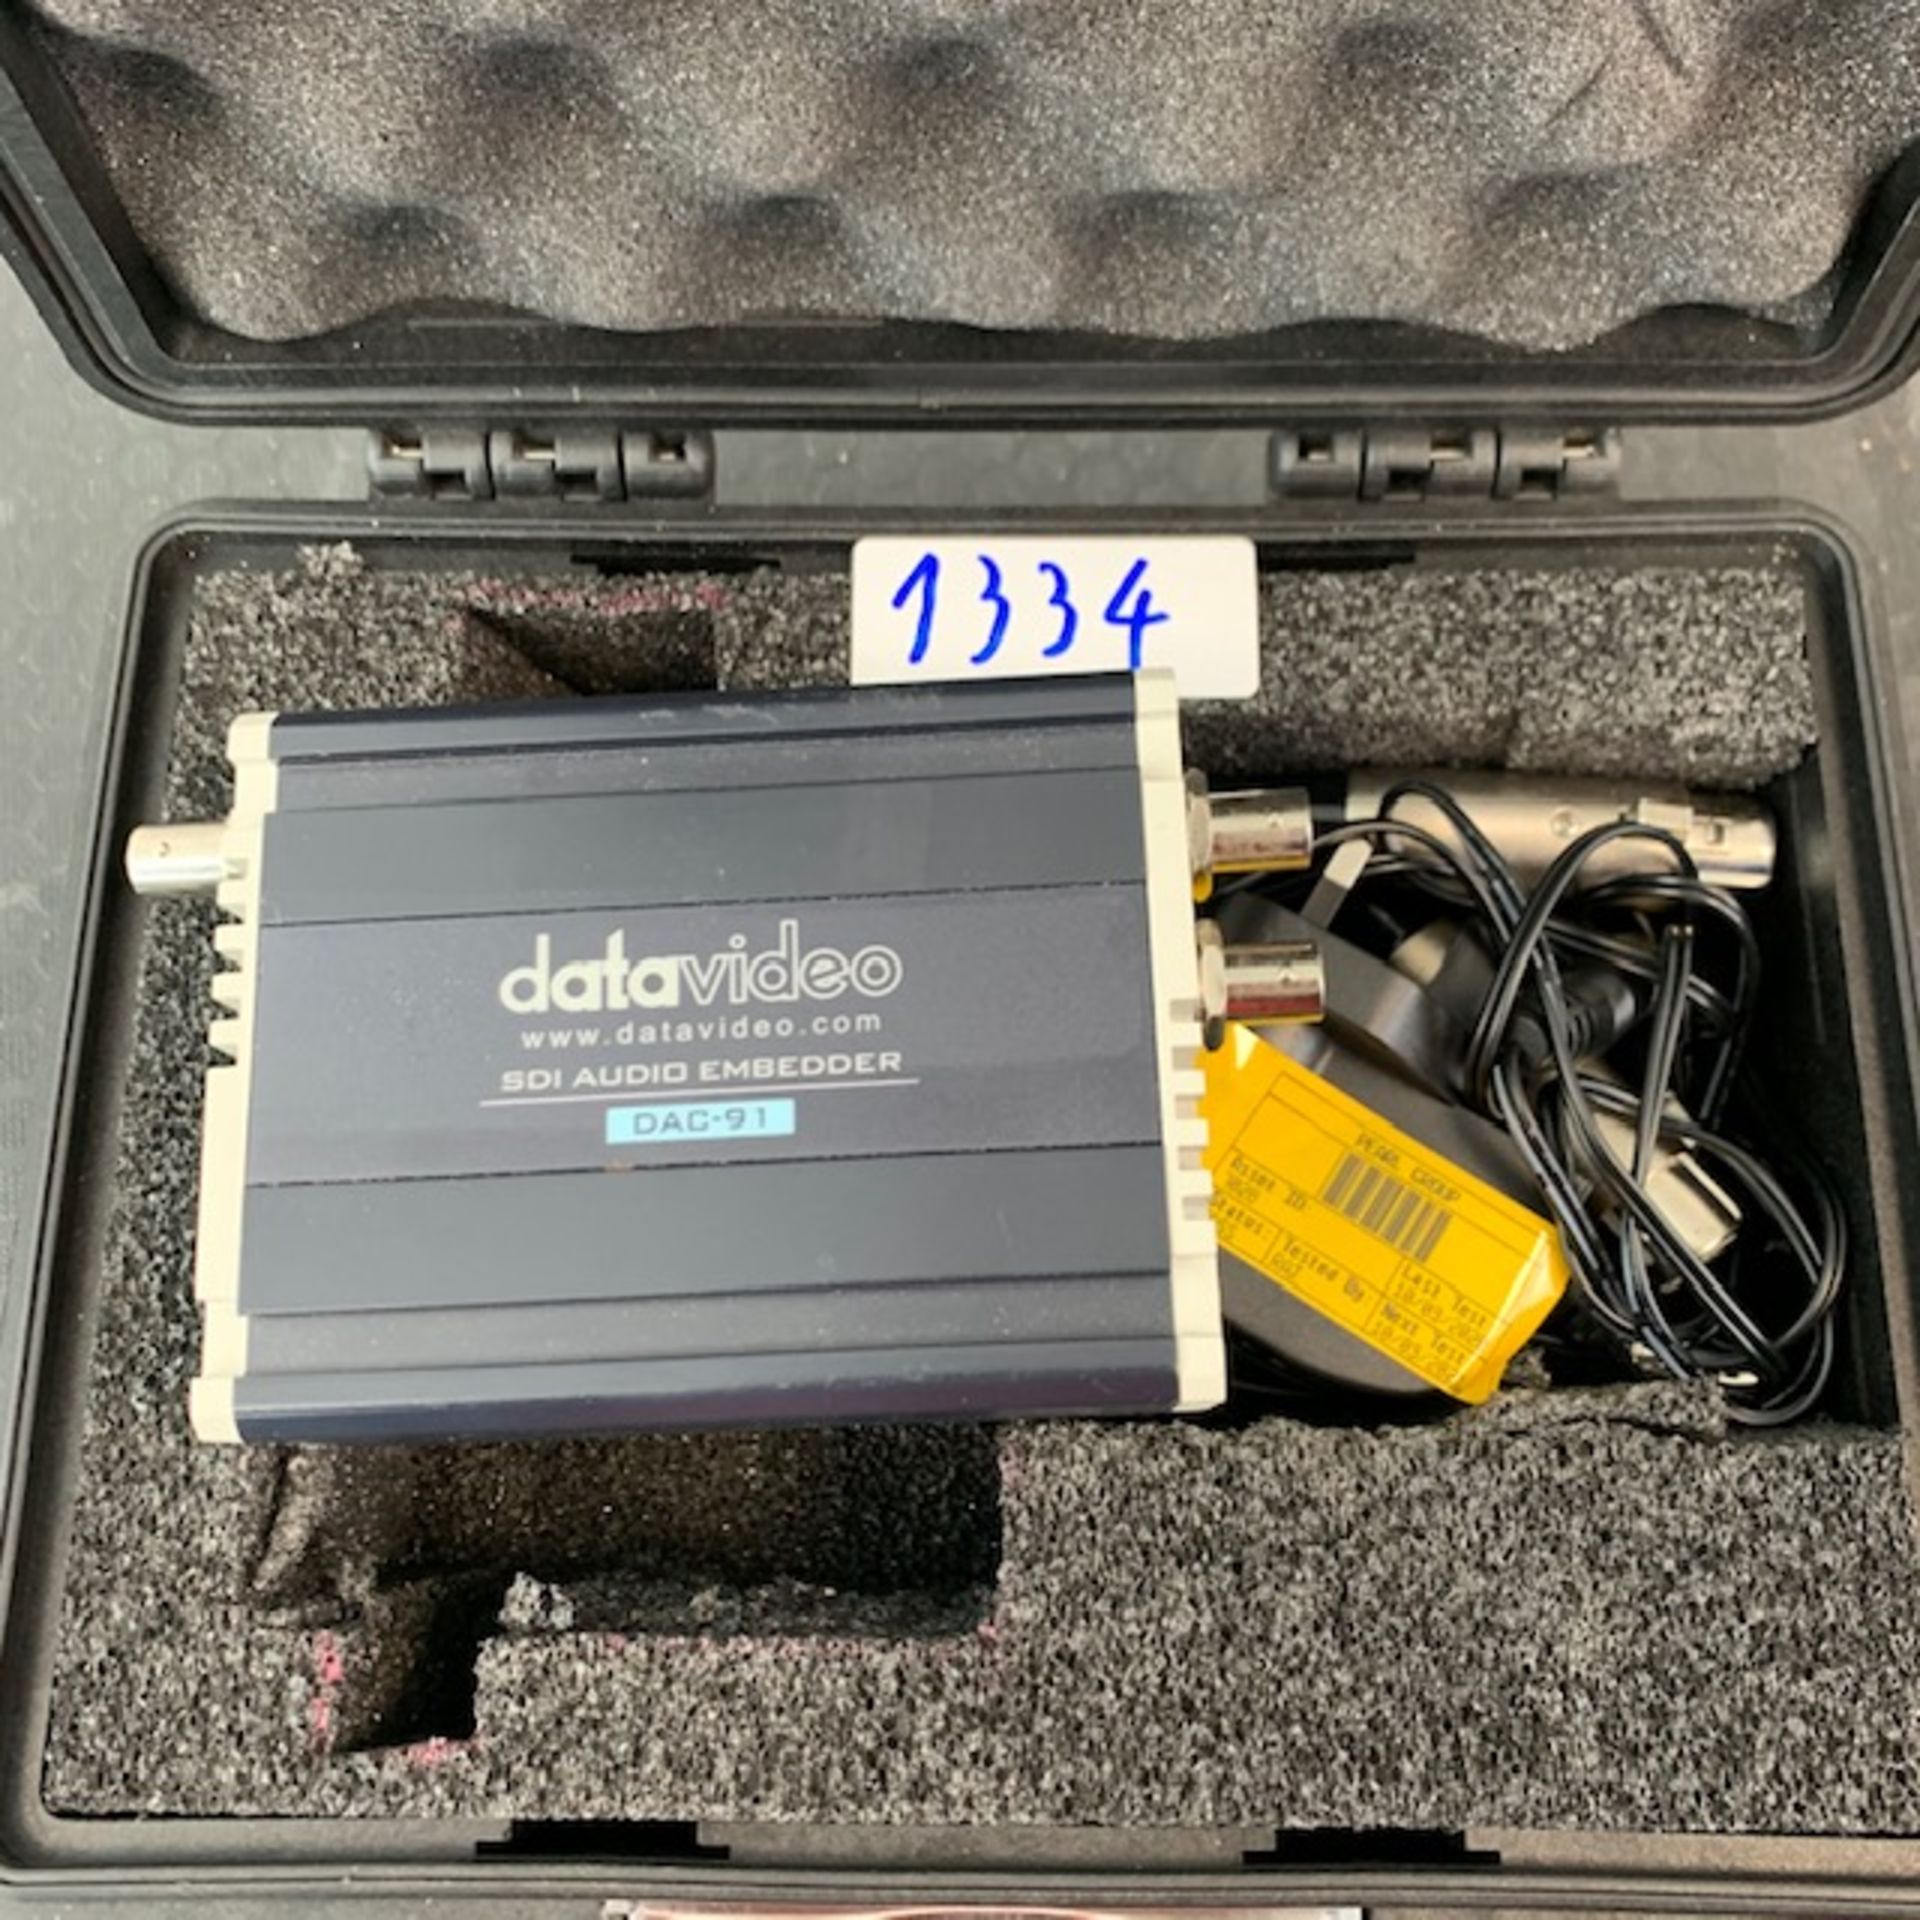 1 X Datavideo DAC-91 Sdi Audio Embedder In Stagg Case - Ref: 1334 - CL581 - Location: Altrincham